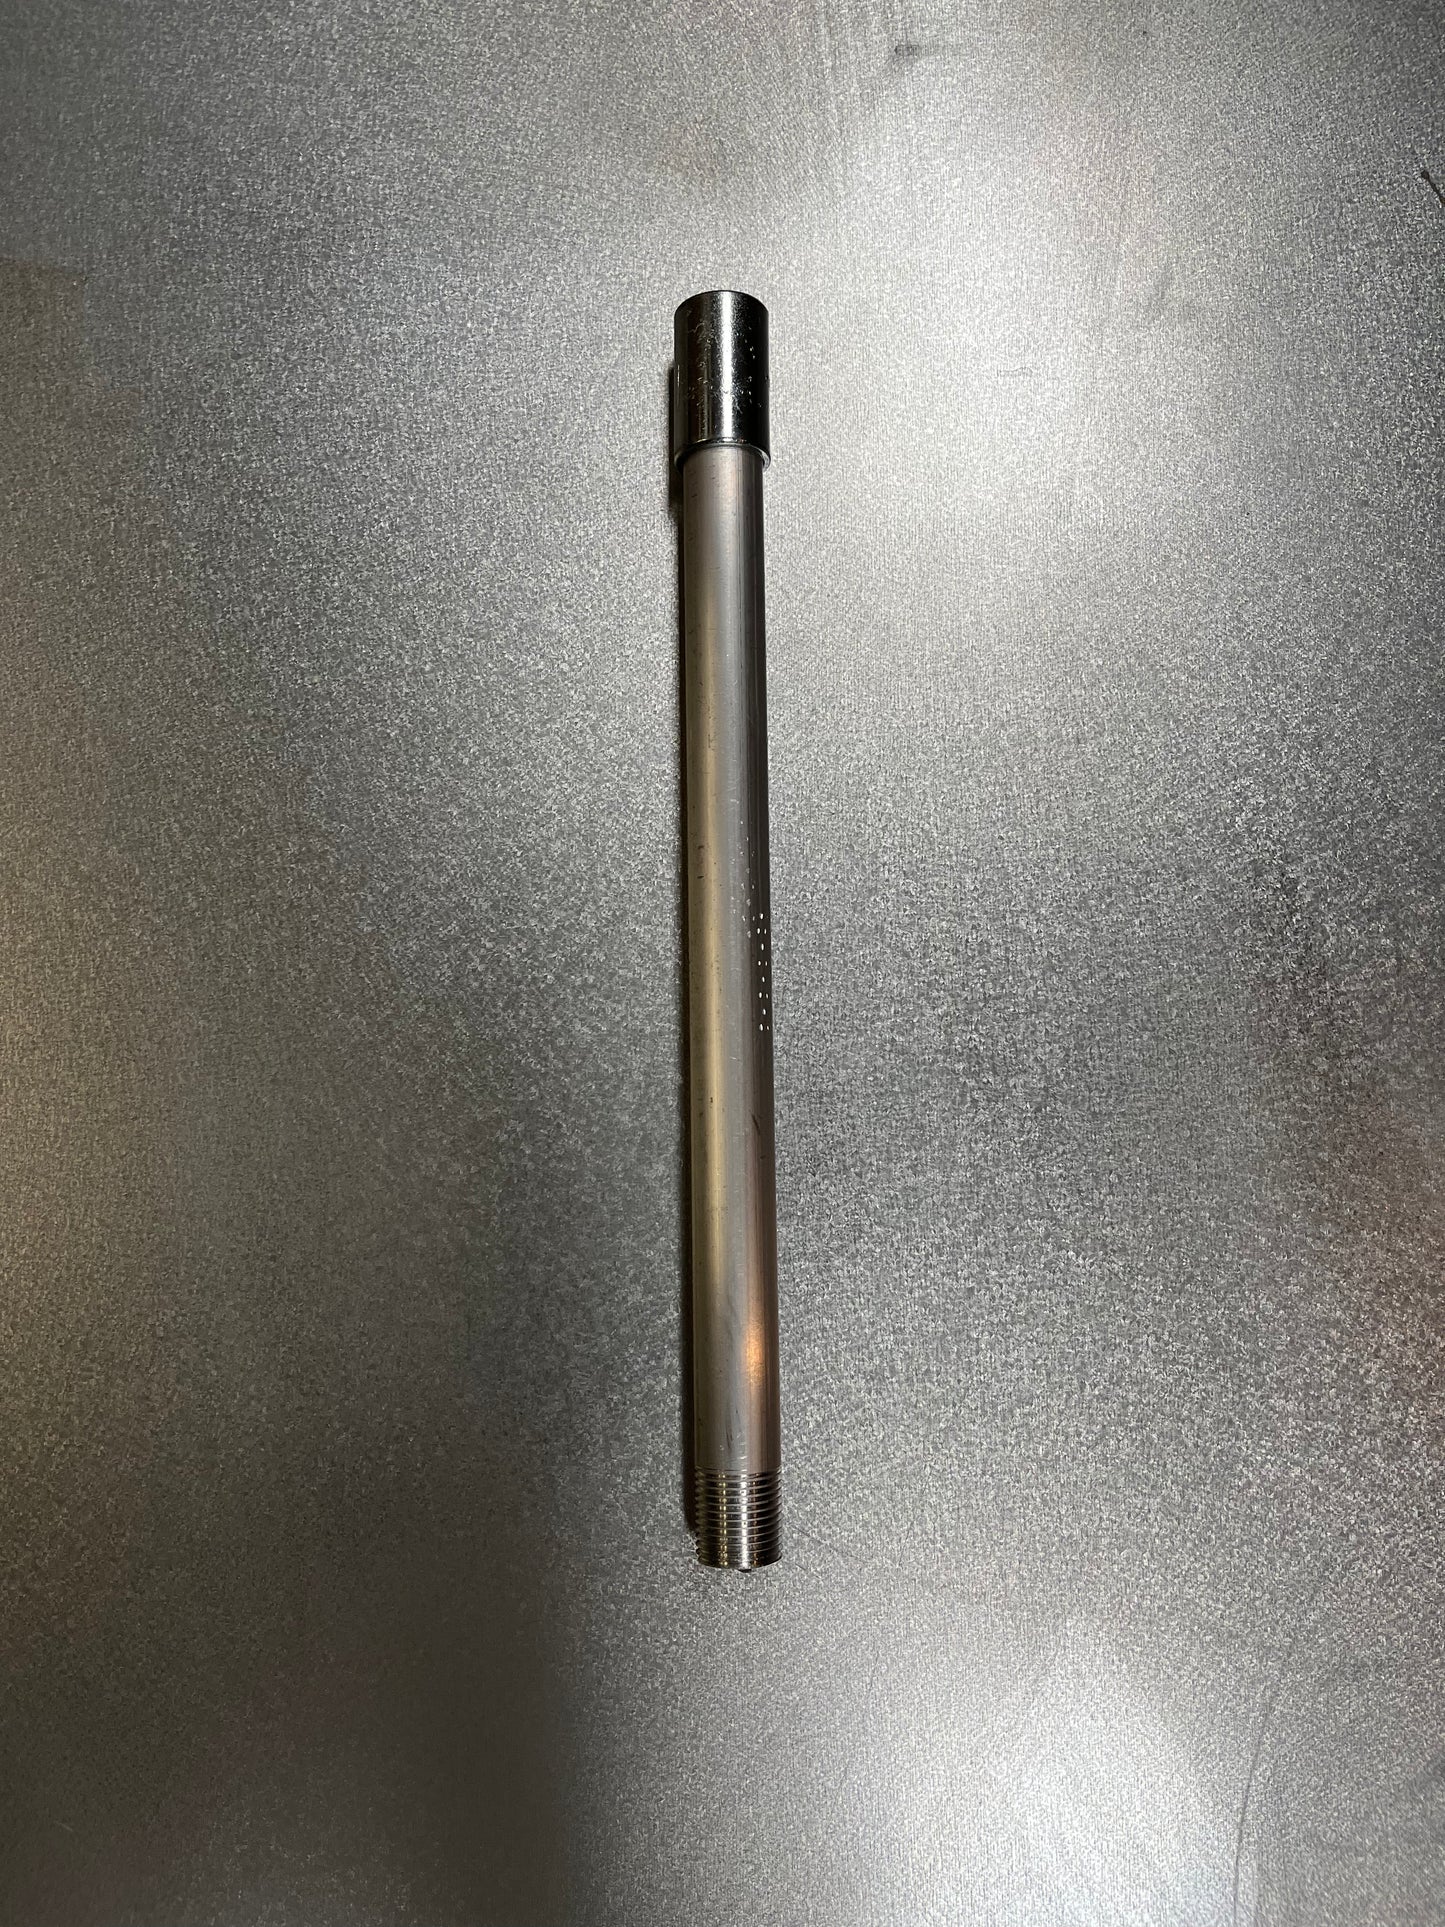 1ft Aluminum Pole